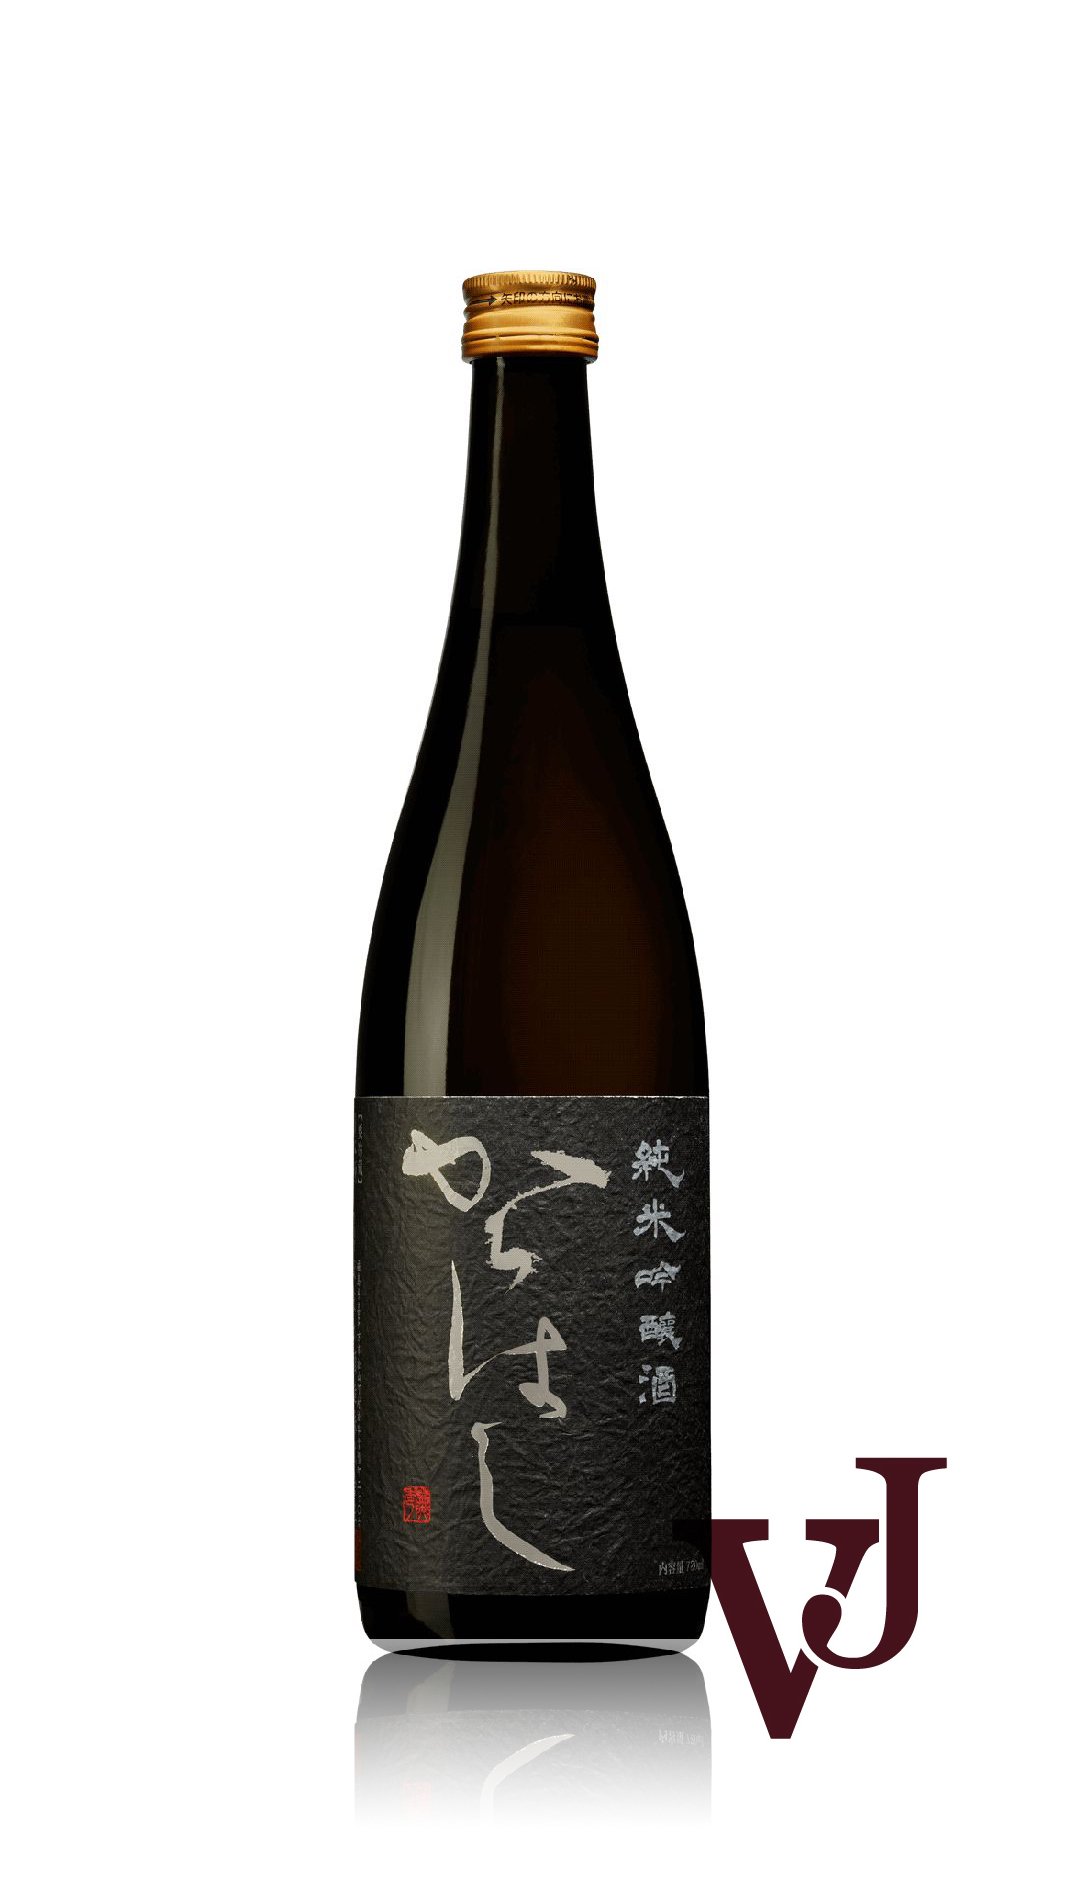 Övrigt Vin - Homare Karahashi Junmai Ginjo artikel nummer 9375001 från producenten Homare Sake Brewery Co Ltd från Japan.